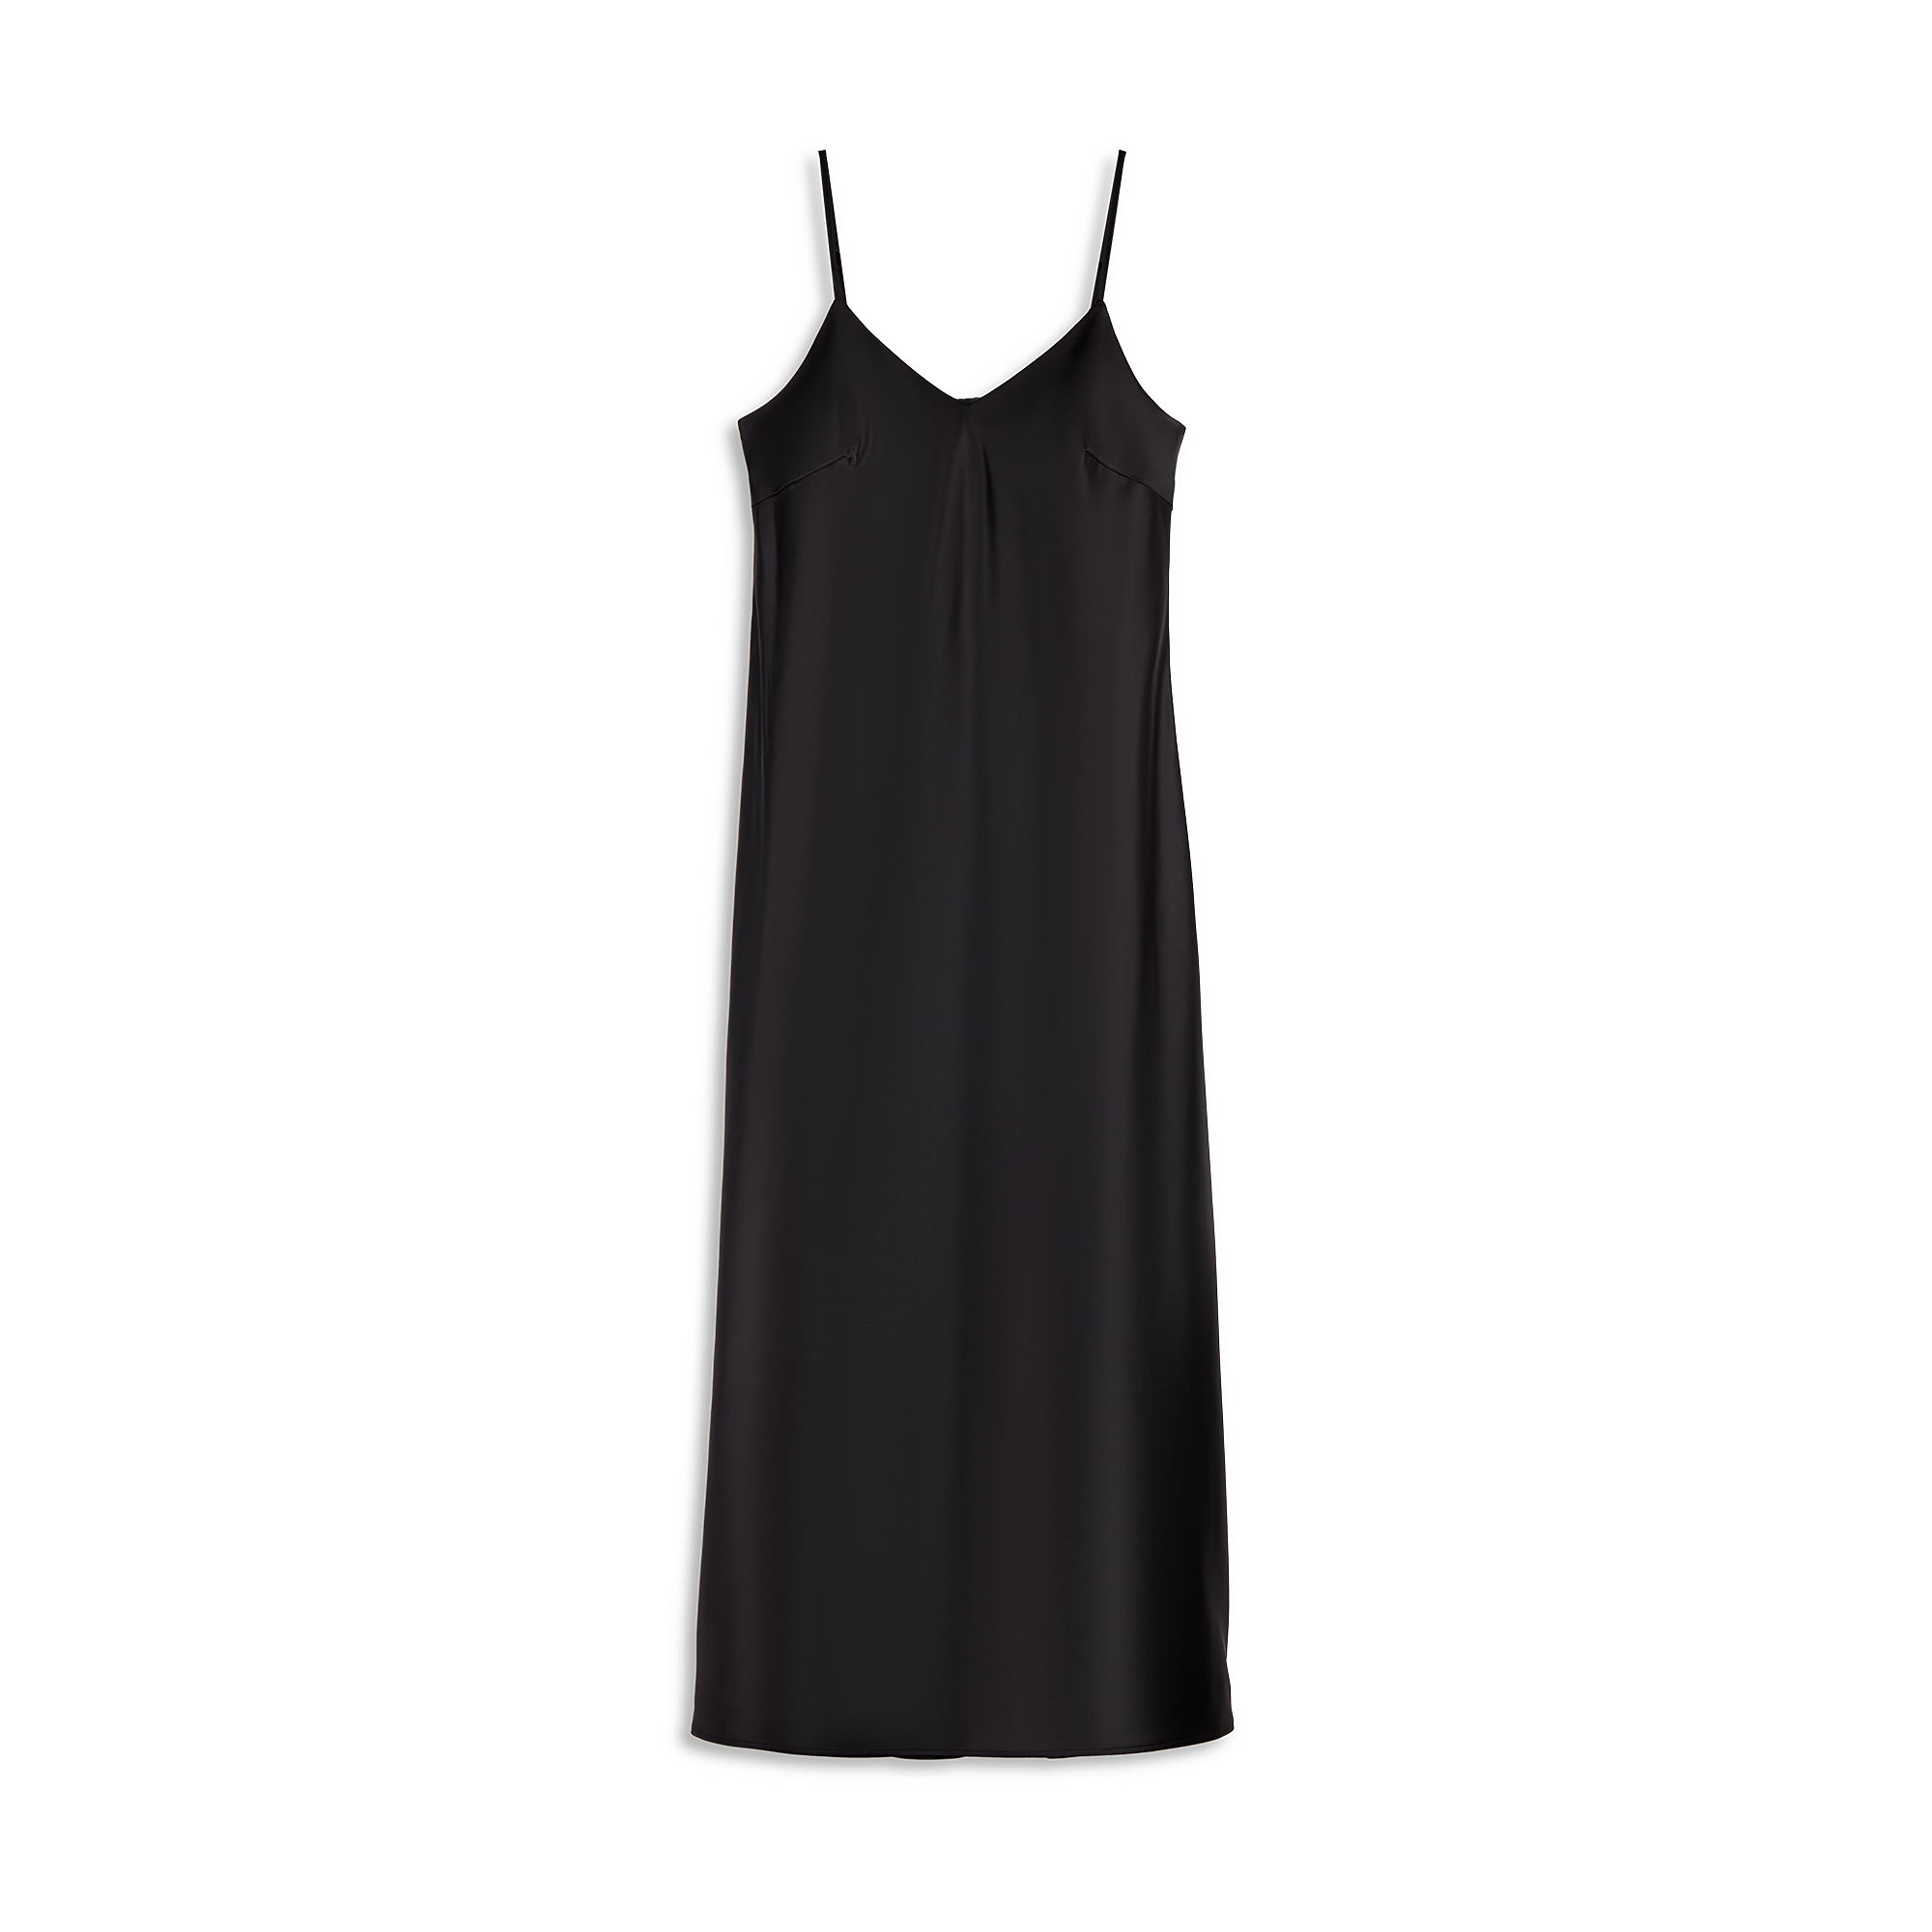 Платье Thomas Munz 878-41N-0102, цвет черный, размер 46-164-170